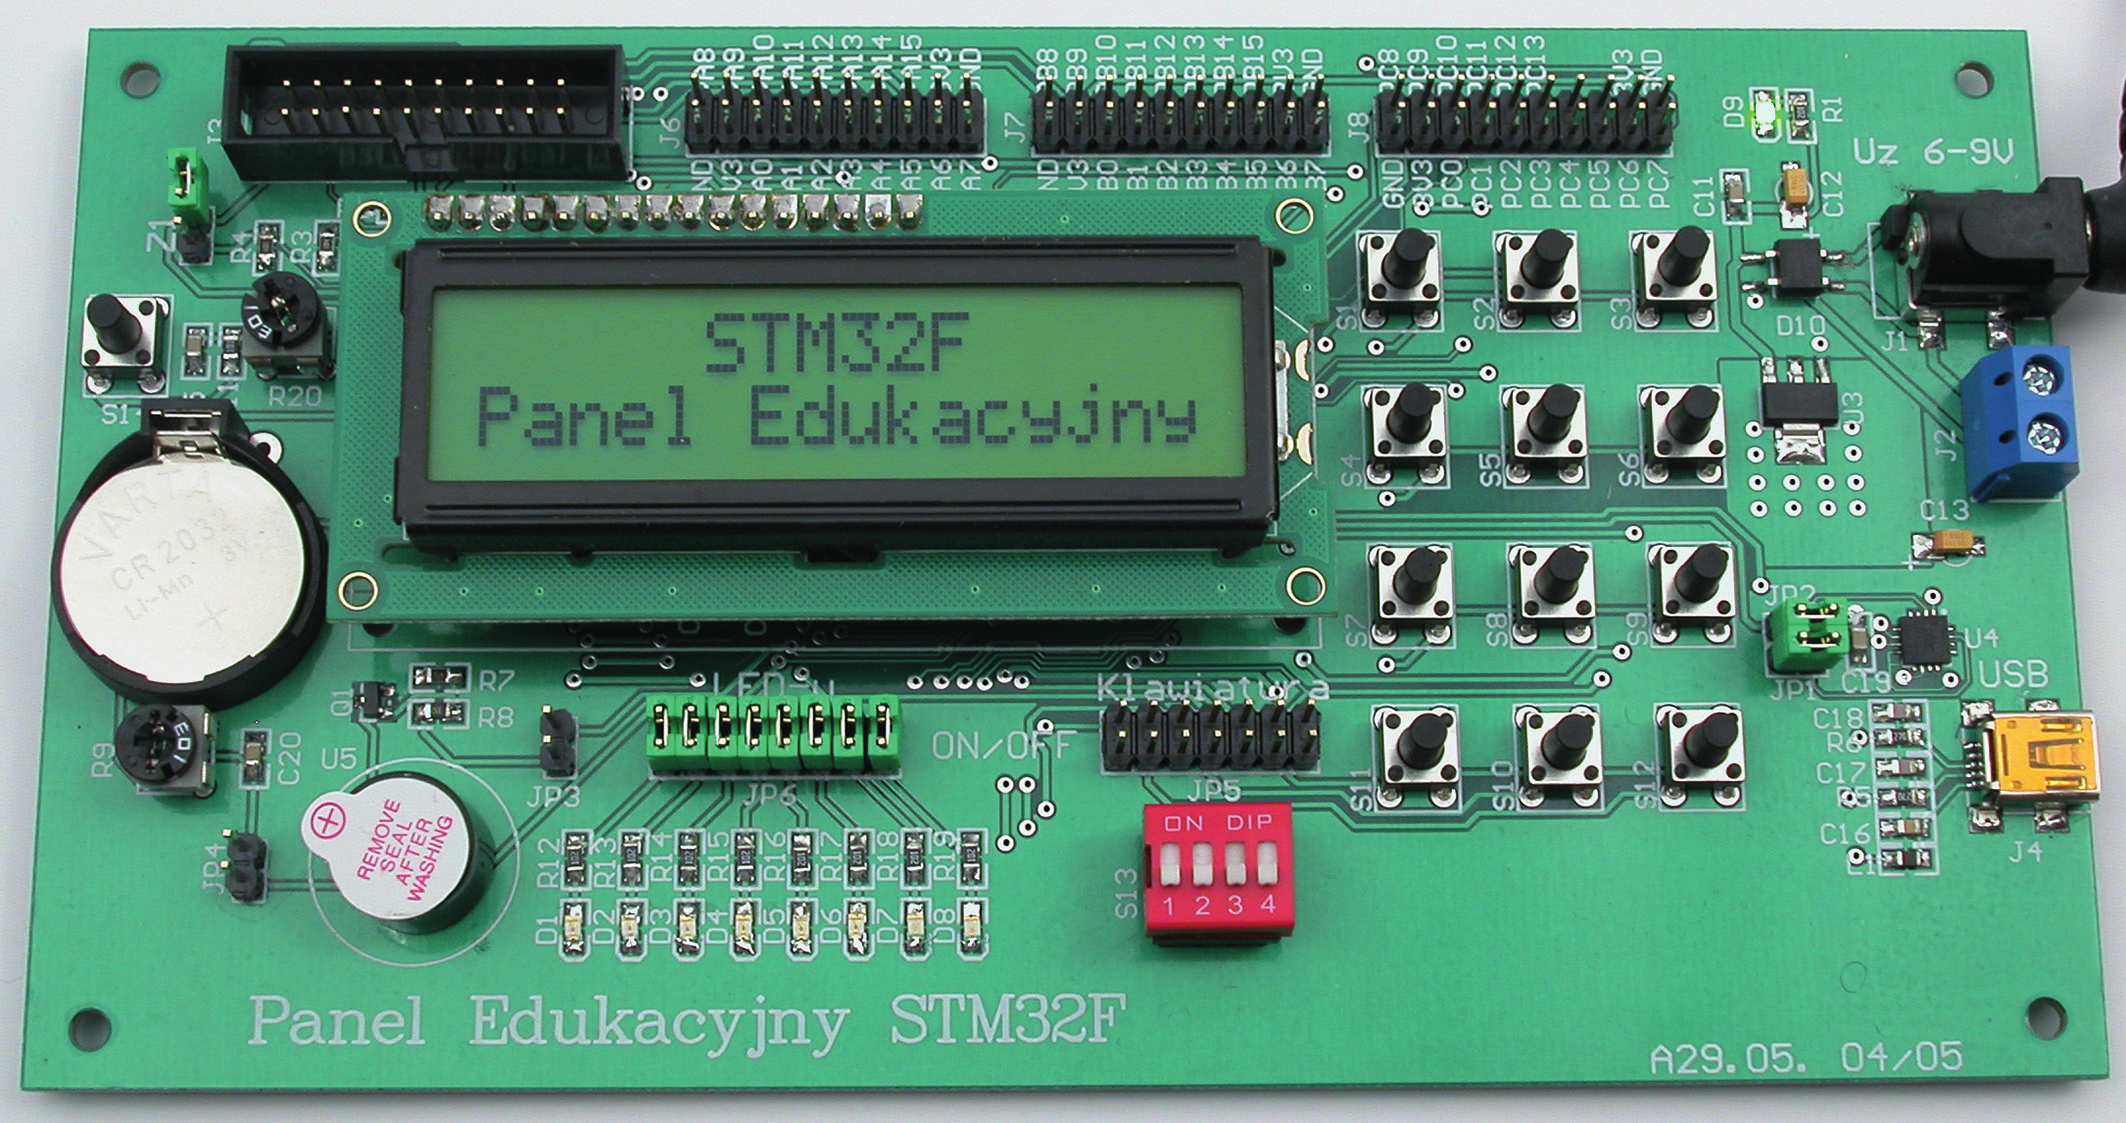 PROJEKTY AVT 5465 STM32 dla początkujących (i nie tylko) Łatwy do wykonania panel edukacyjny, który jest przeznaczony do nauki programowania oraz eksperymentowania z mikrokontrolerem z rodziny STM32F.